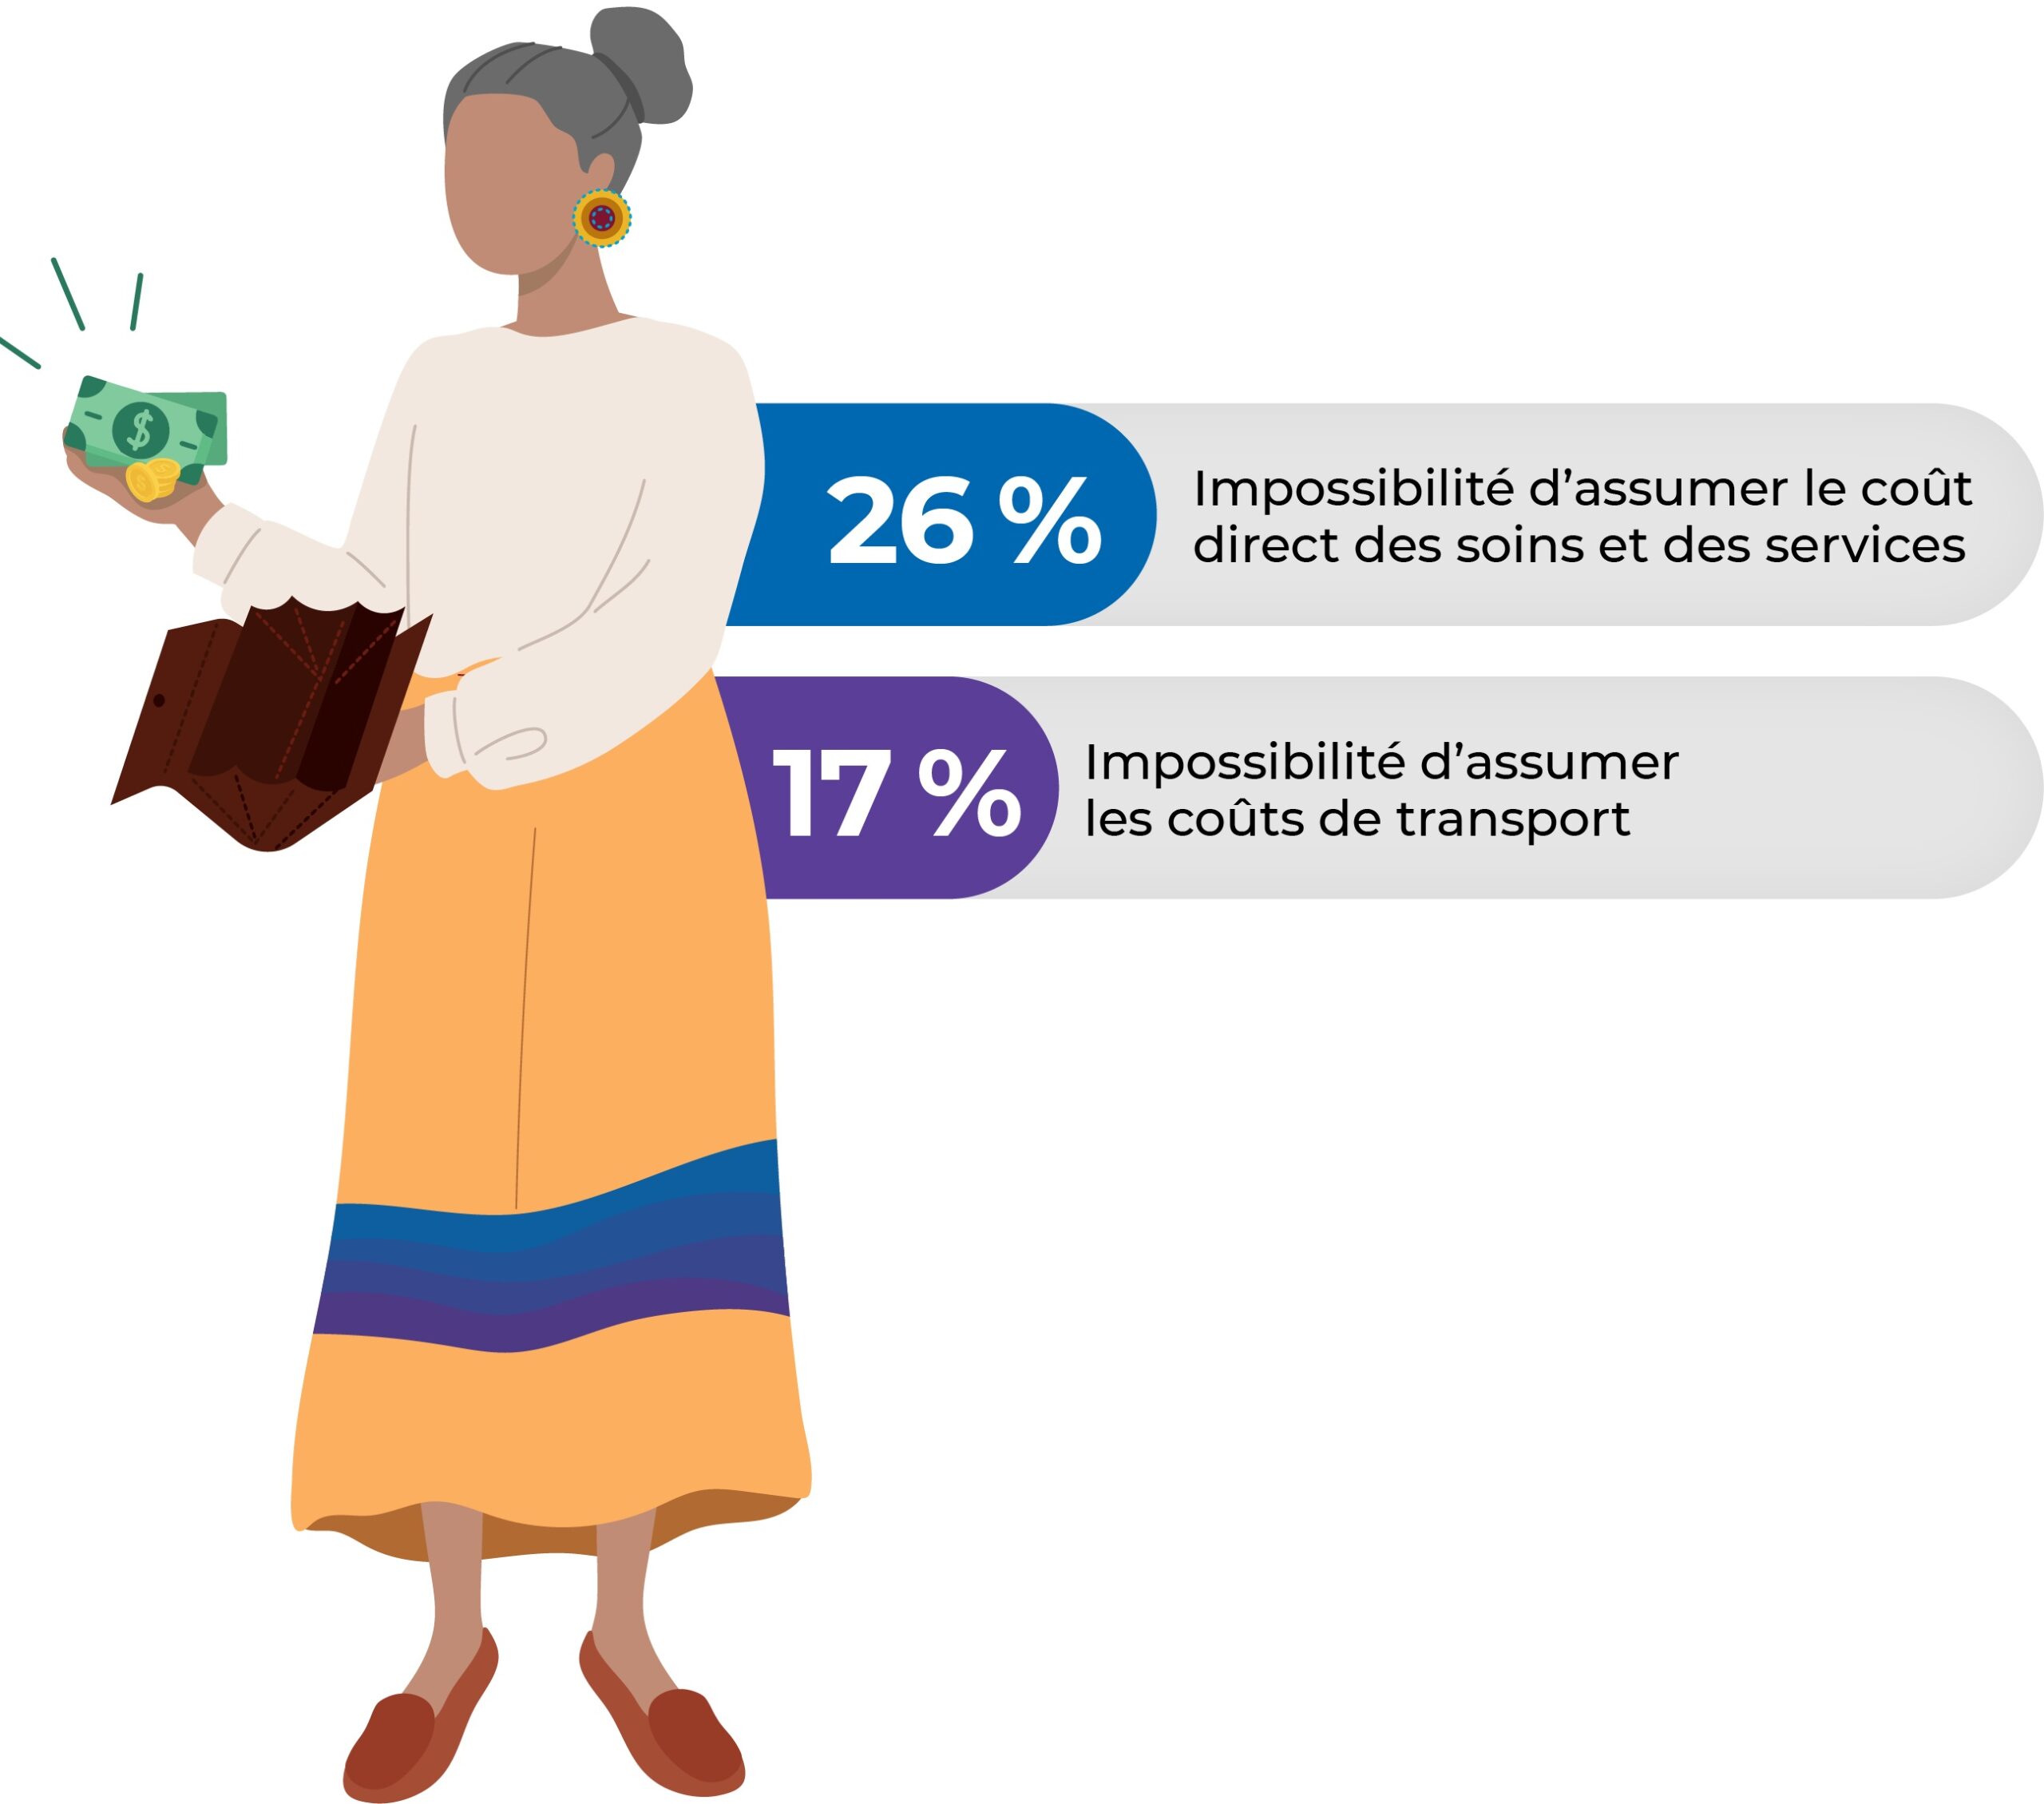 Obstacles économiques : 26 % Impossibilité d’assumer le coût direct des soins et des services, 17 % Impossibilité d’assumer les coûts de transport.